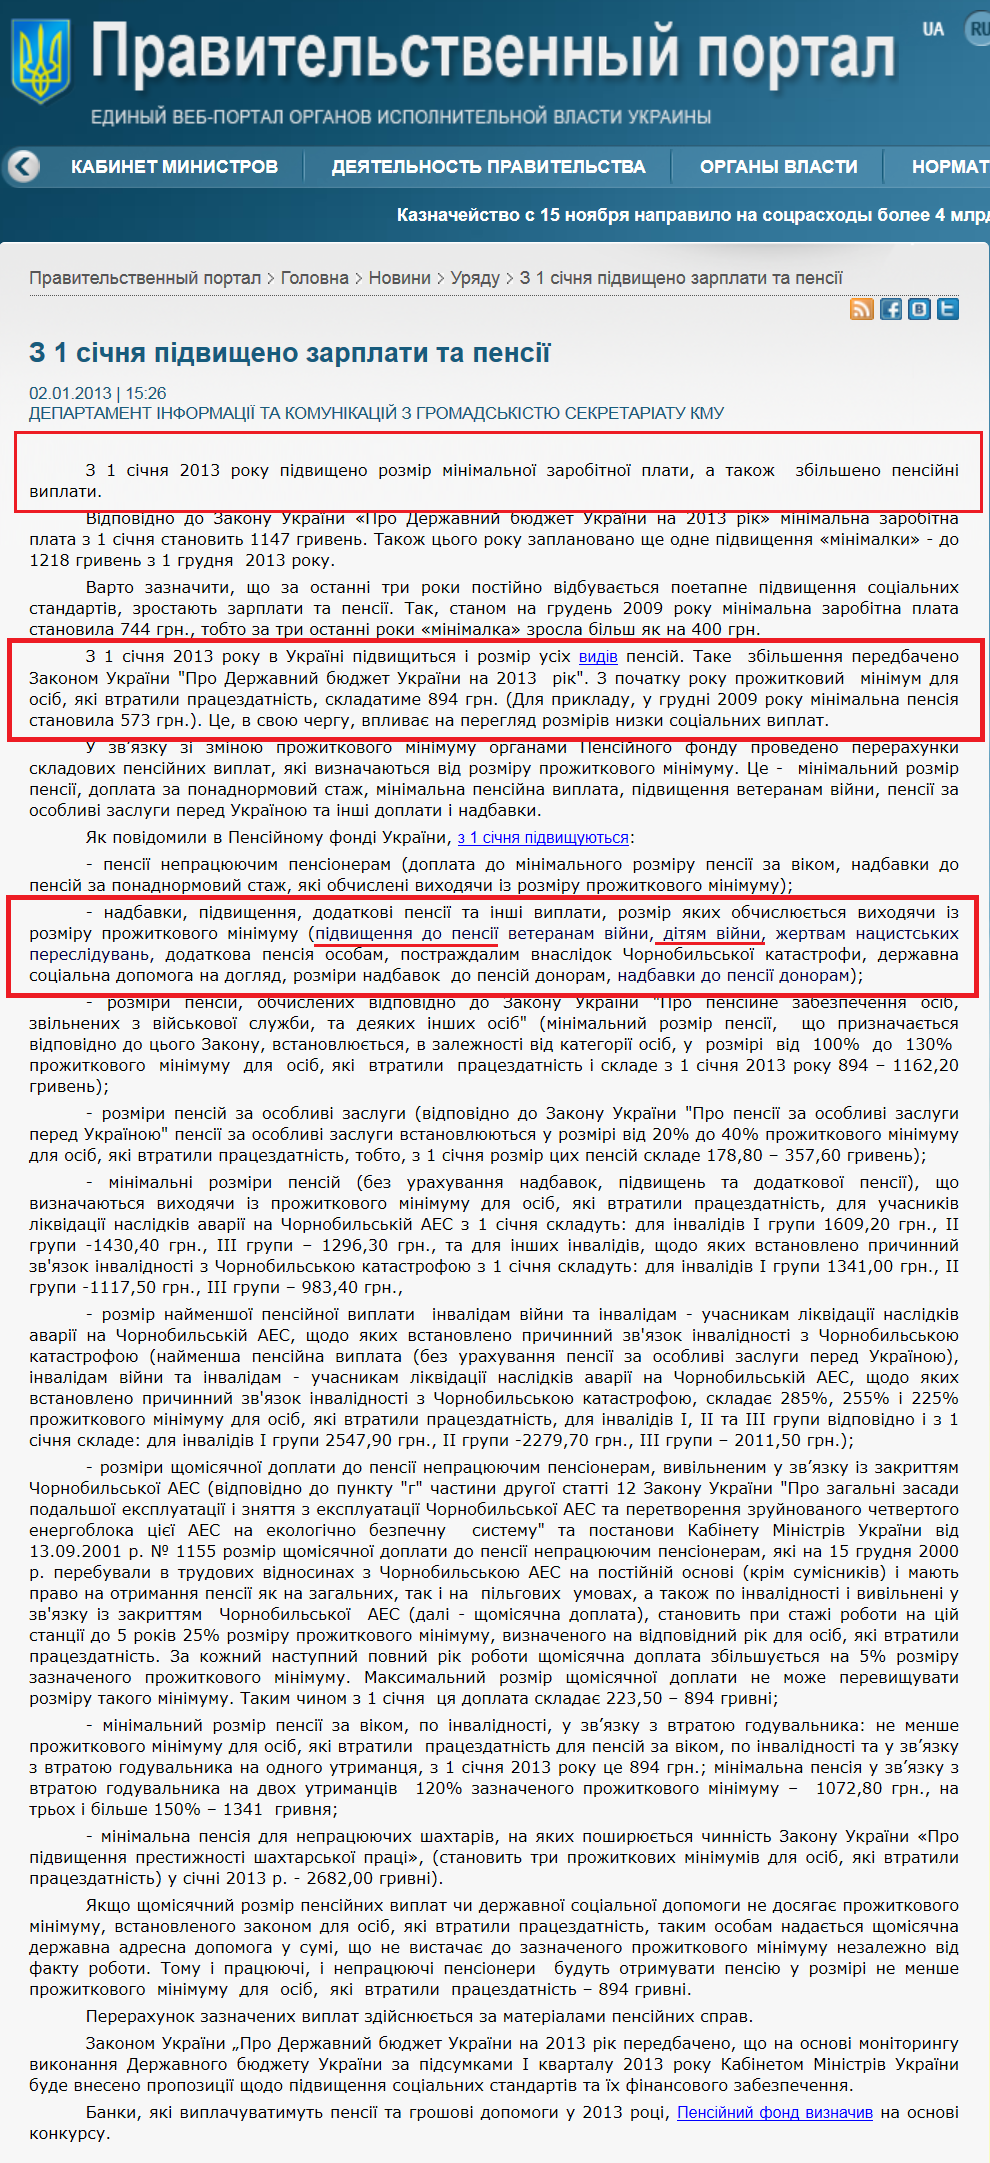 http://www.kmu.gov.ua/control/ru/publish/article?art_id=245930543&cat_id=244276429